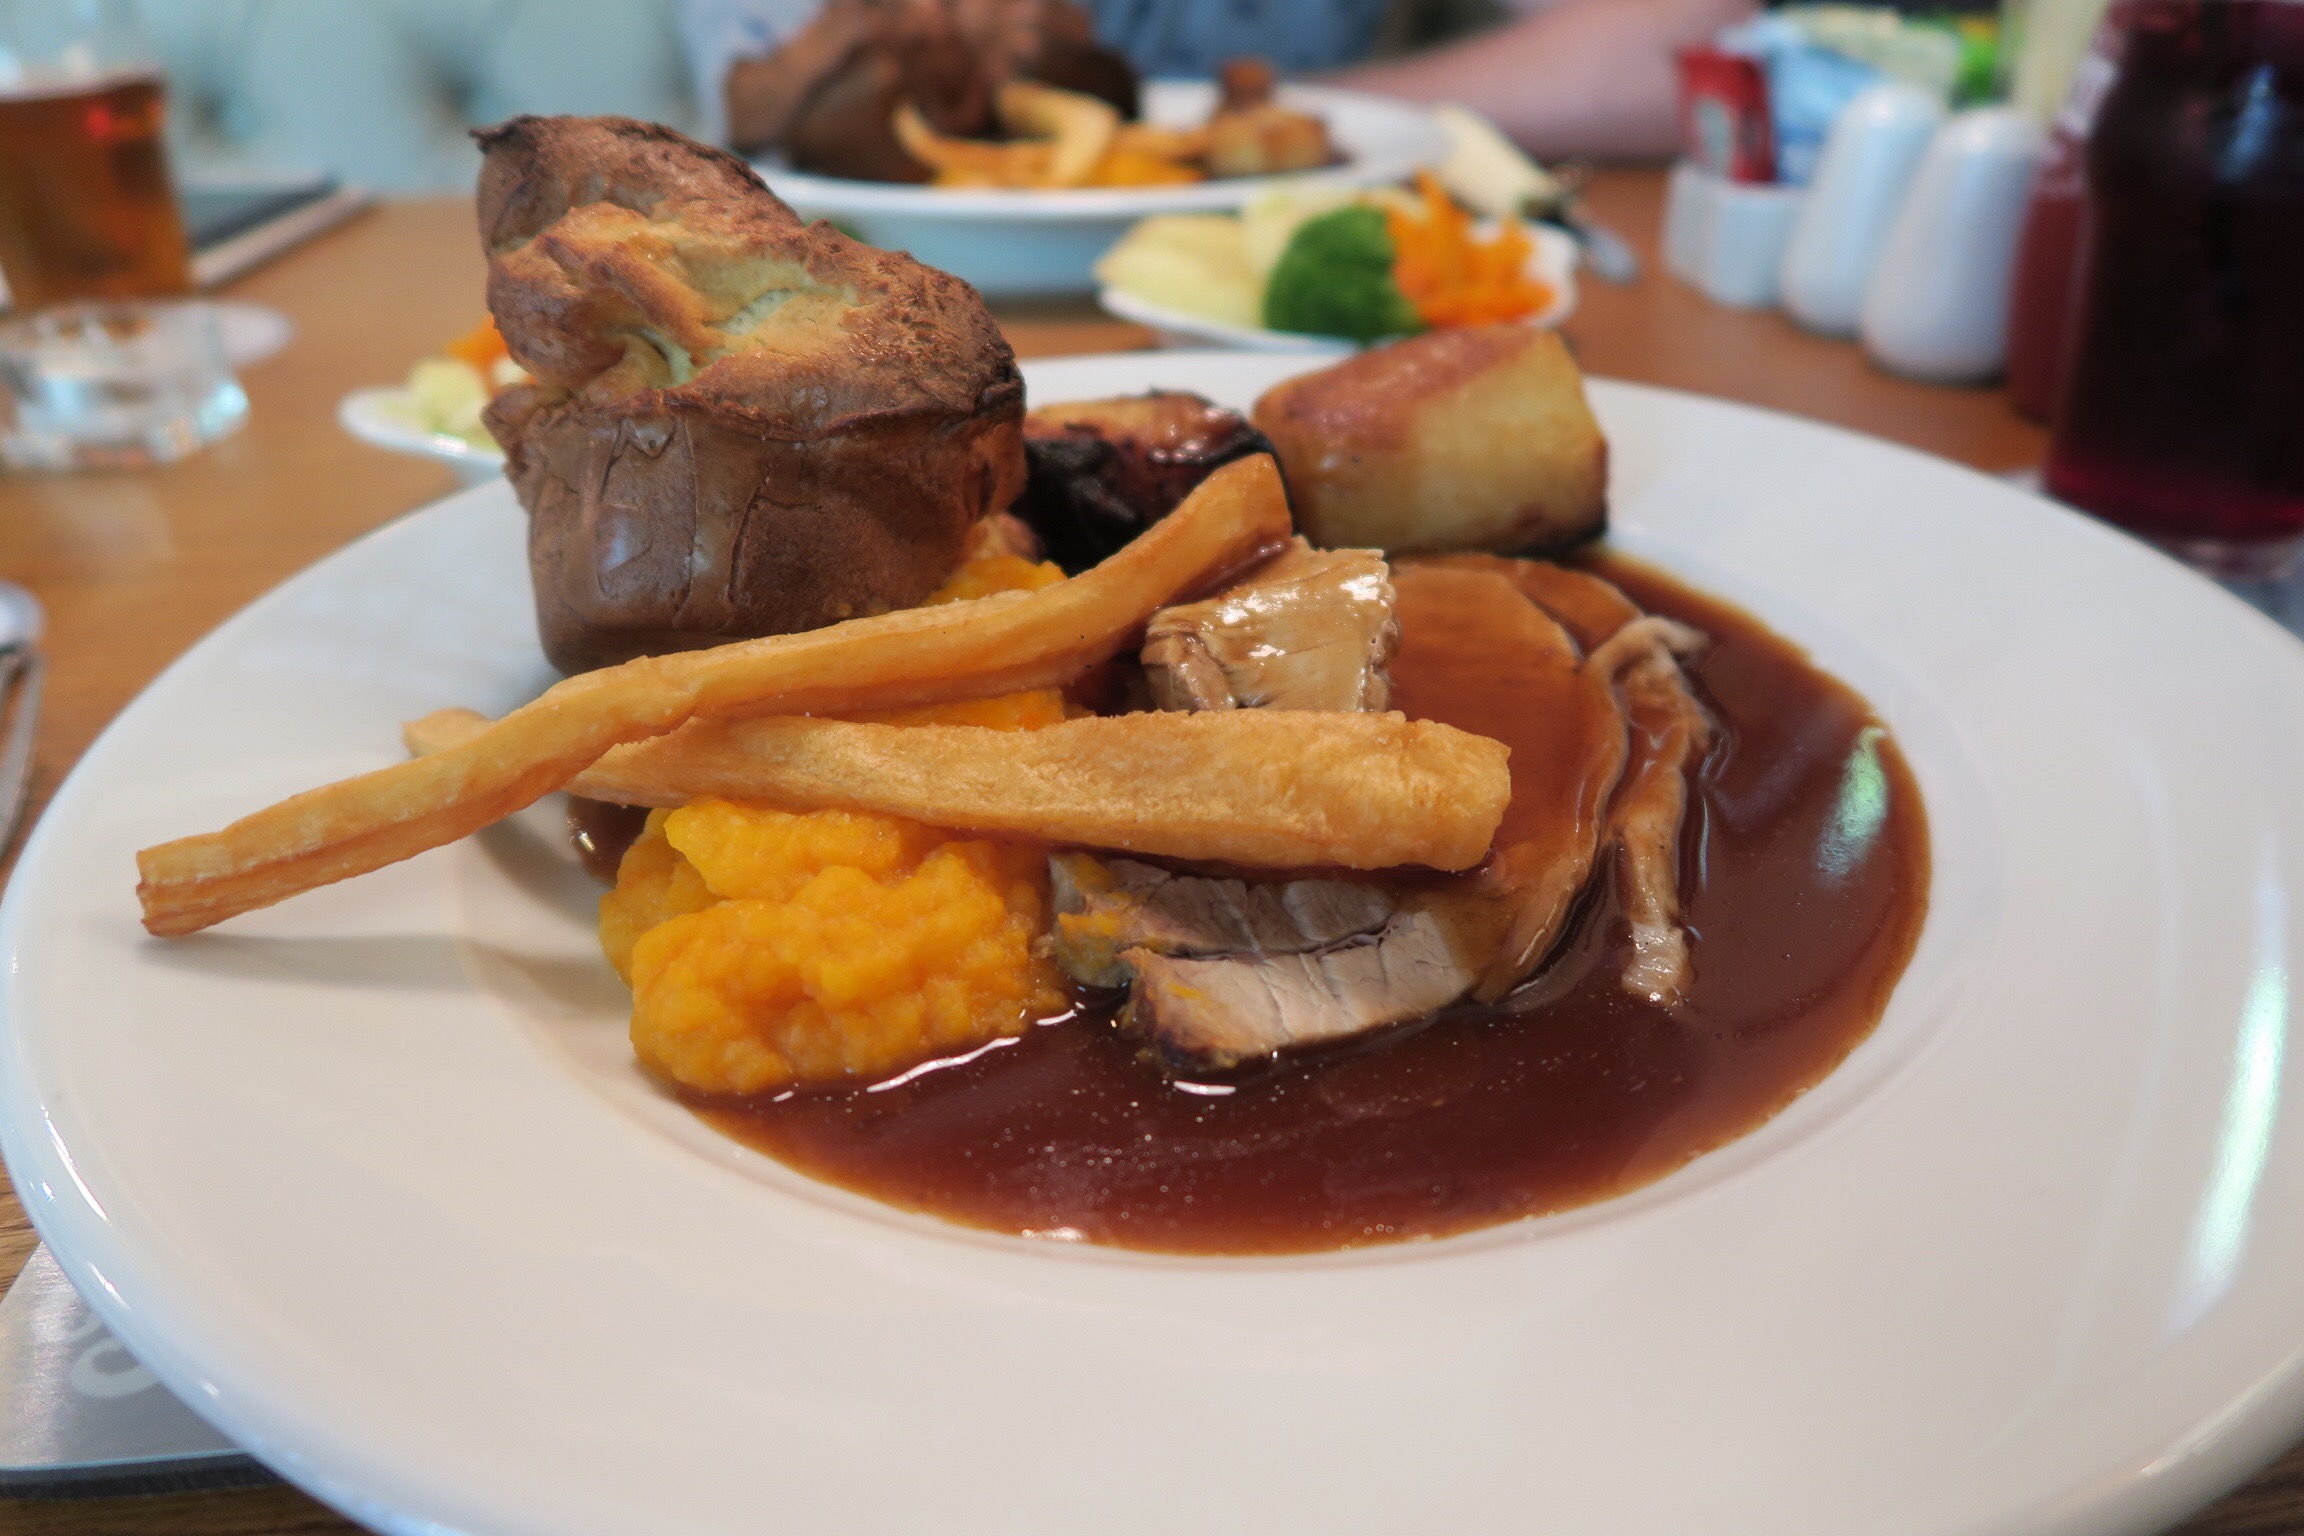 Restaurant Review - Kingslodge Inn, Durham